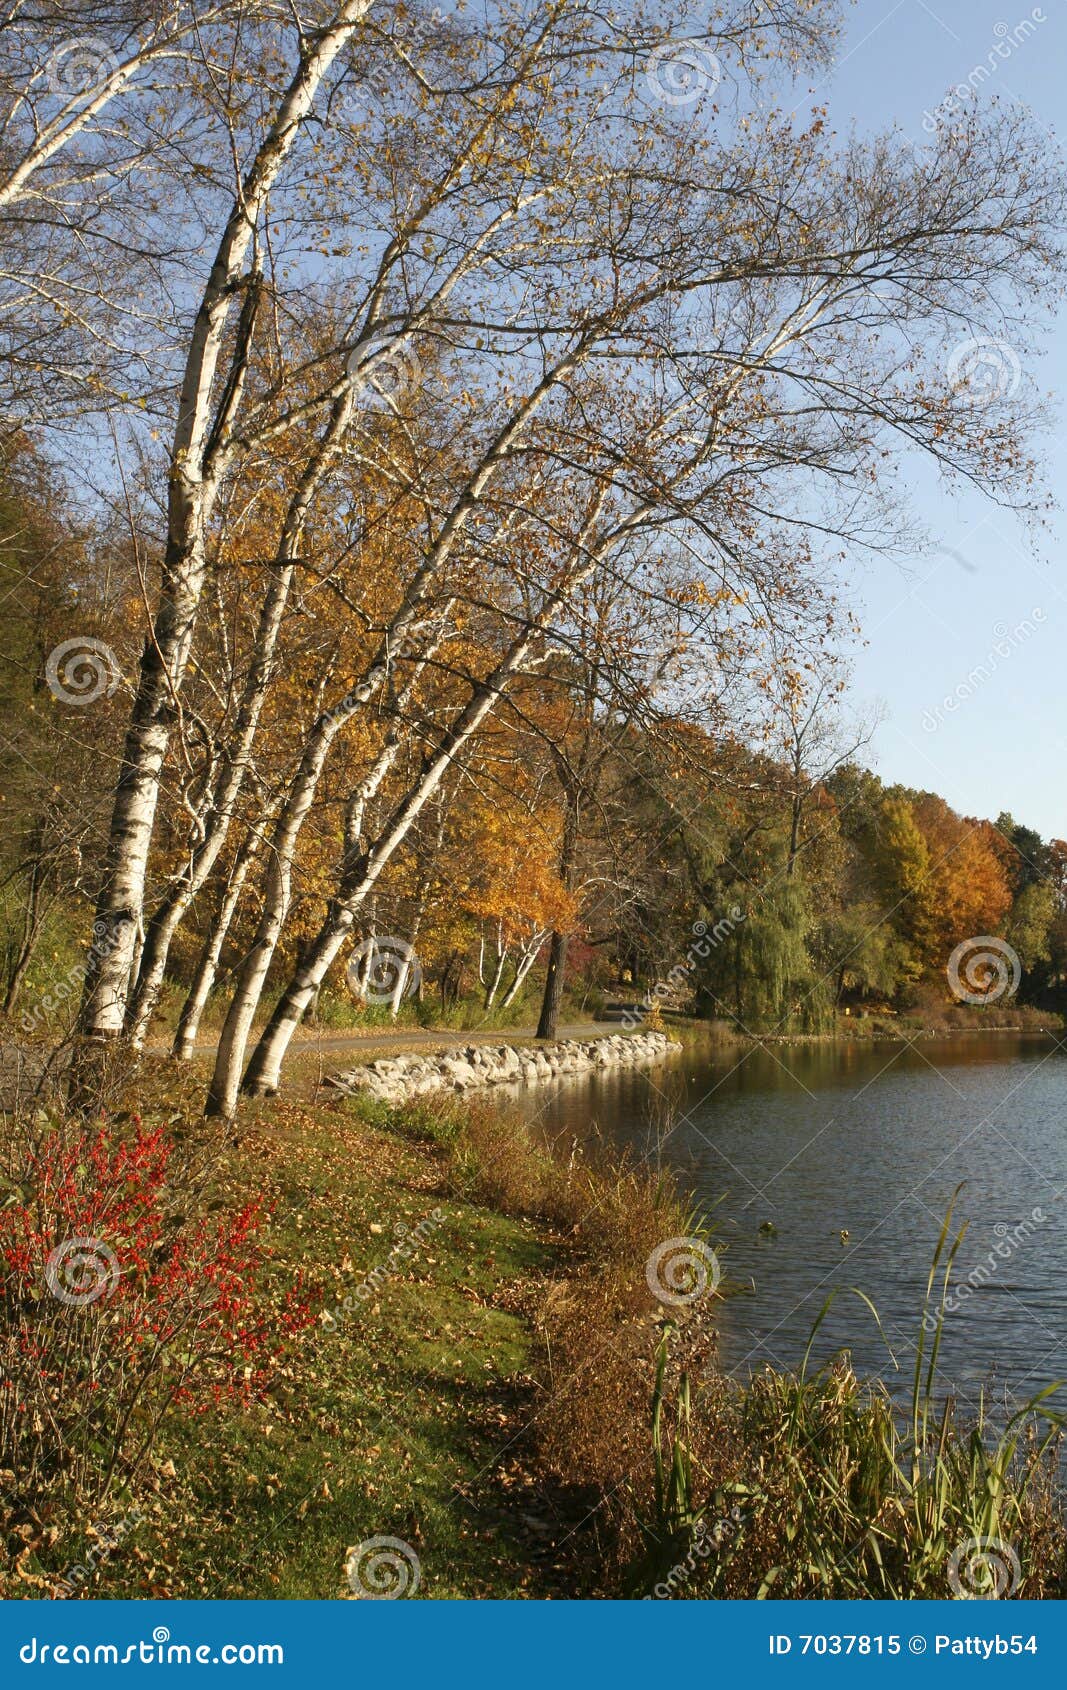 Fall At Hidden Lake Gardens Stock Image Image Of Fall